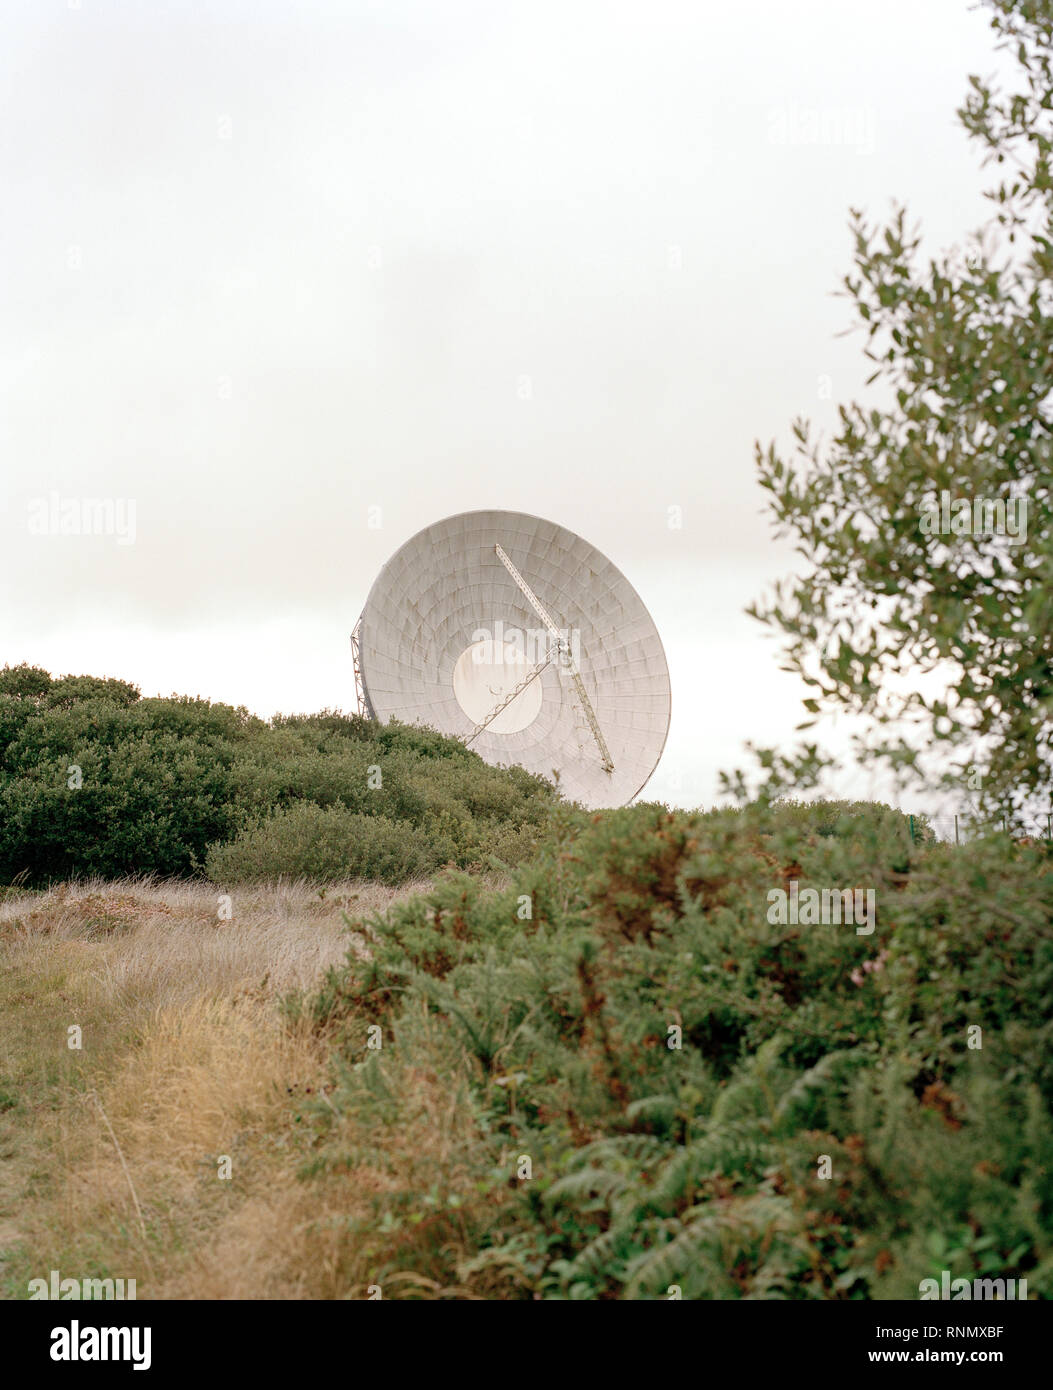 Arthur, noto anche come Goonhilly in groppa-1, è una 1100 t satellite costruito sulla roccia a serpentina che è stato operativo per oltre cinquant'anni. Il piatto ha portato il primo transatlantico immagini tv ma ora diventeranno parte di un radiotelescopio rete. Foto Stock